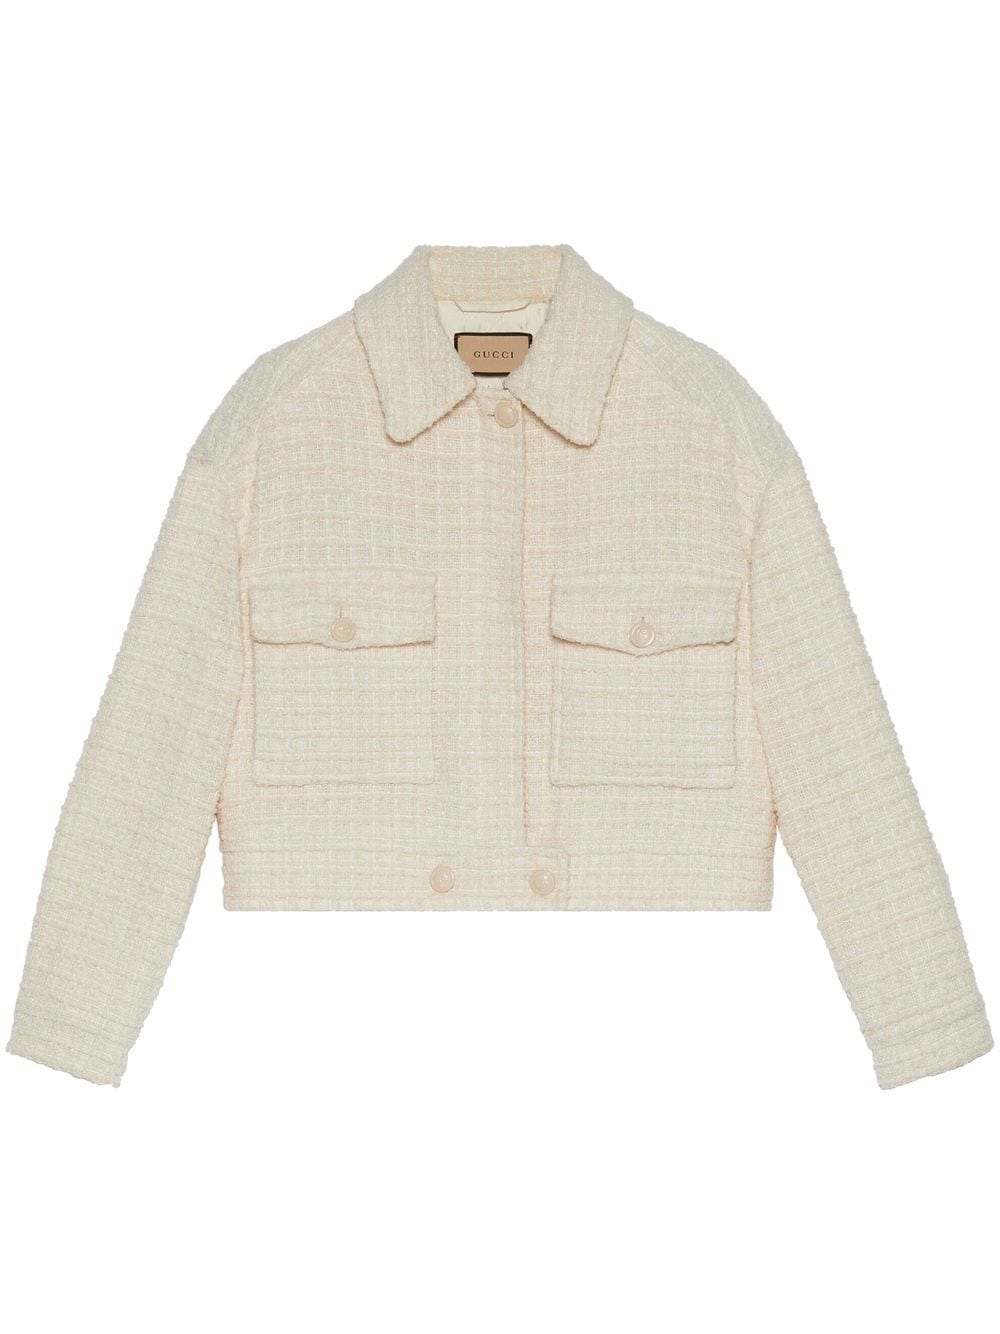 Gucci patch-pocket Tweed Shirt Jacket - Farfetch